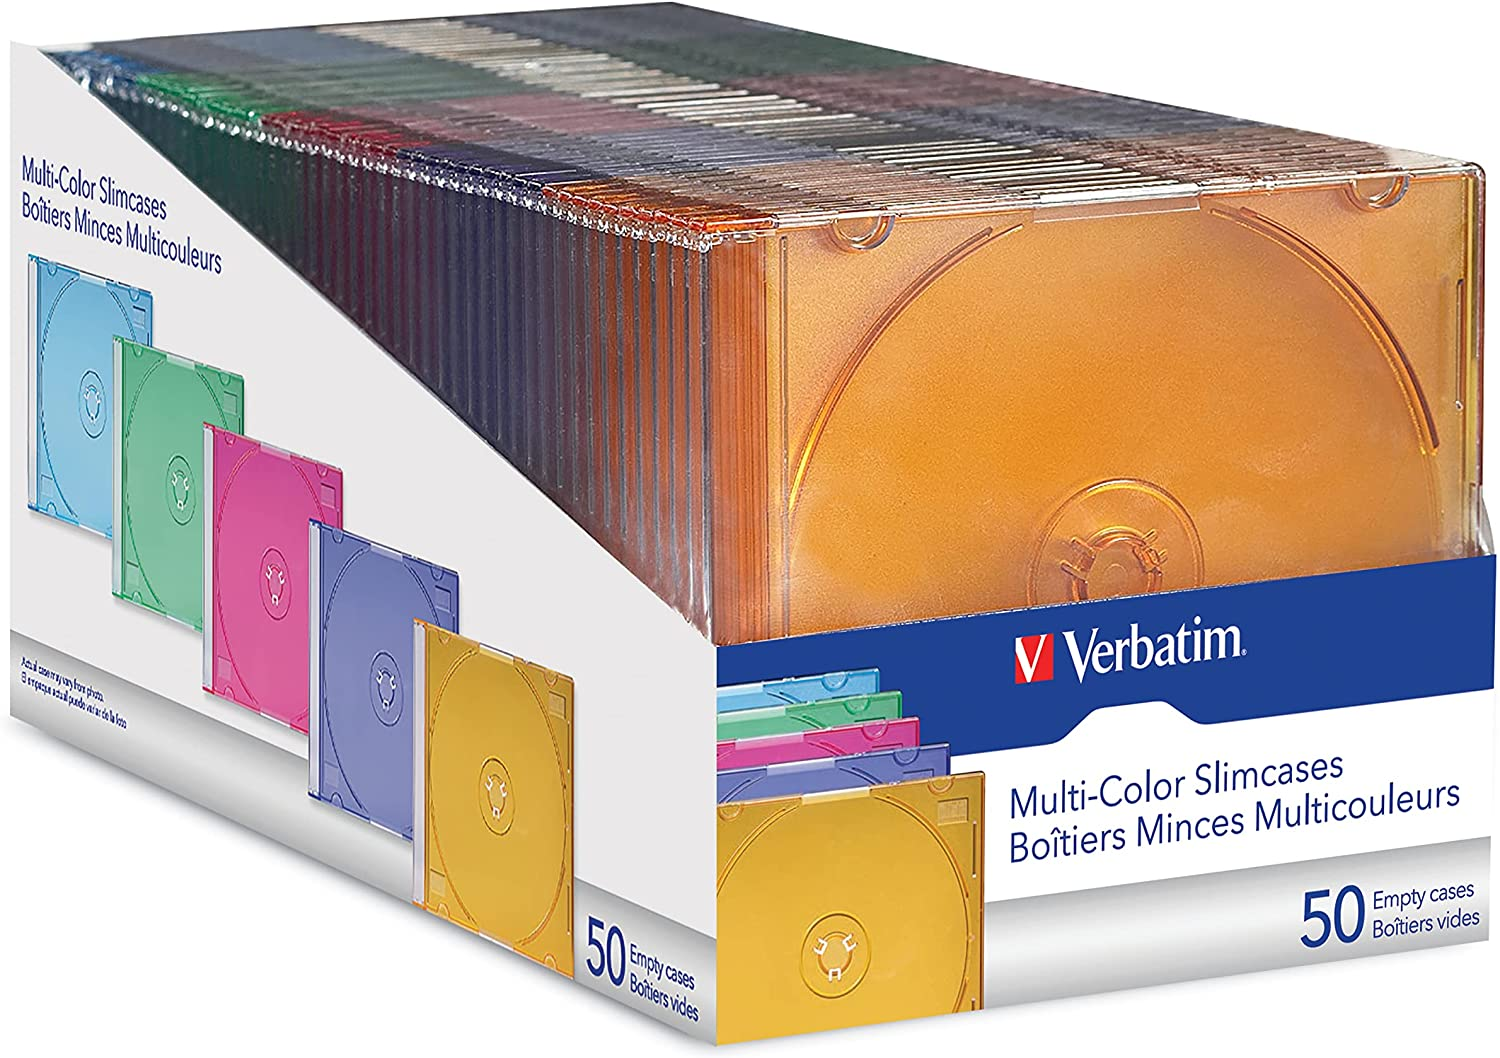 Amazon.com: Verbatim CD/DVD Slim Jewel Cases (0.21 inches) - Assorted Colors - 50 pack $11.83